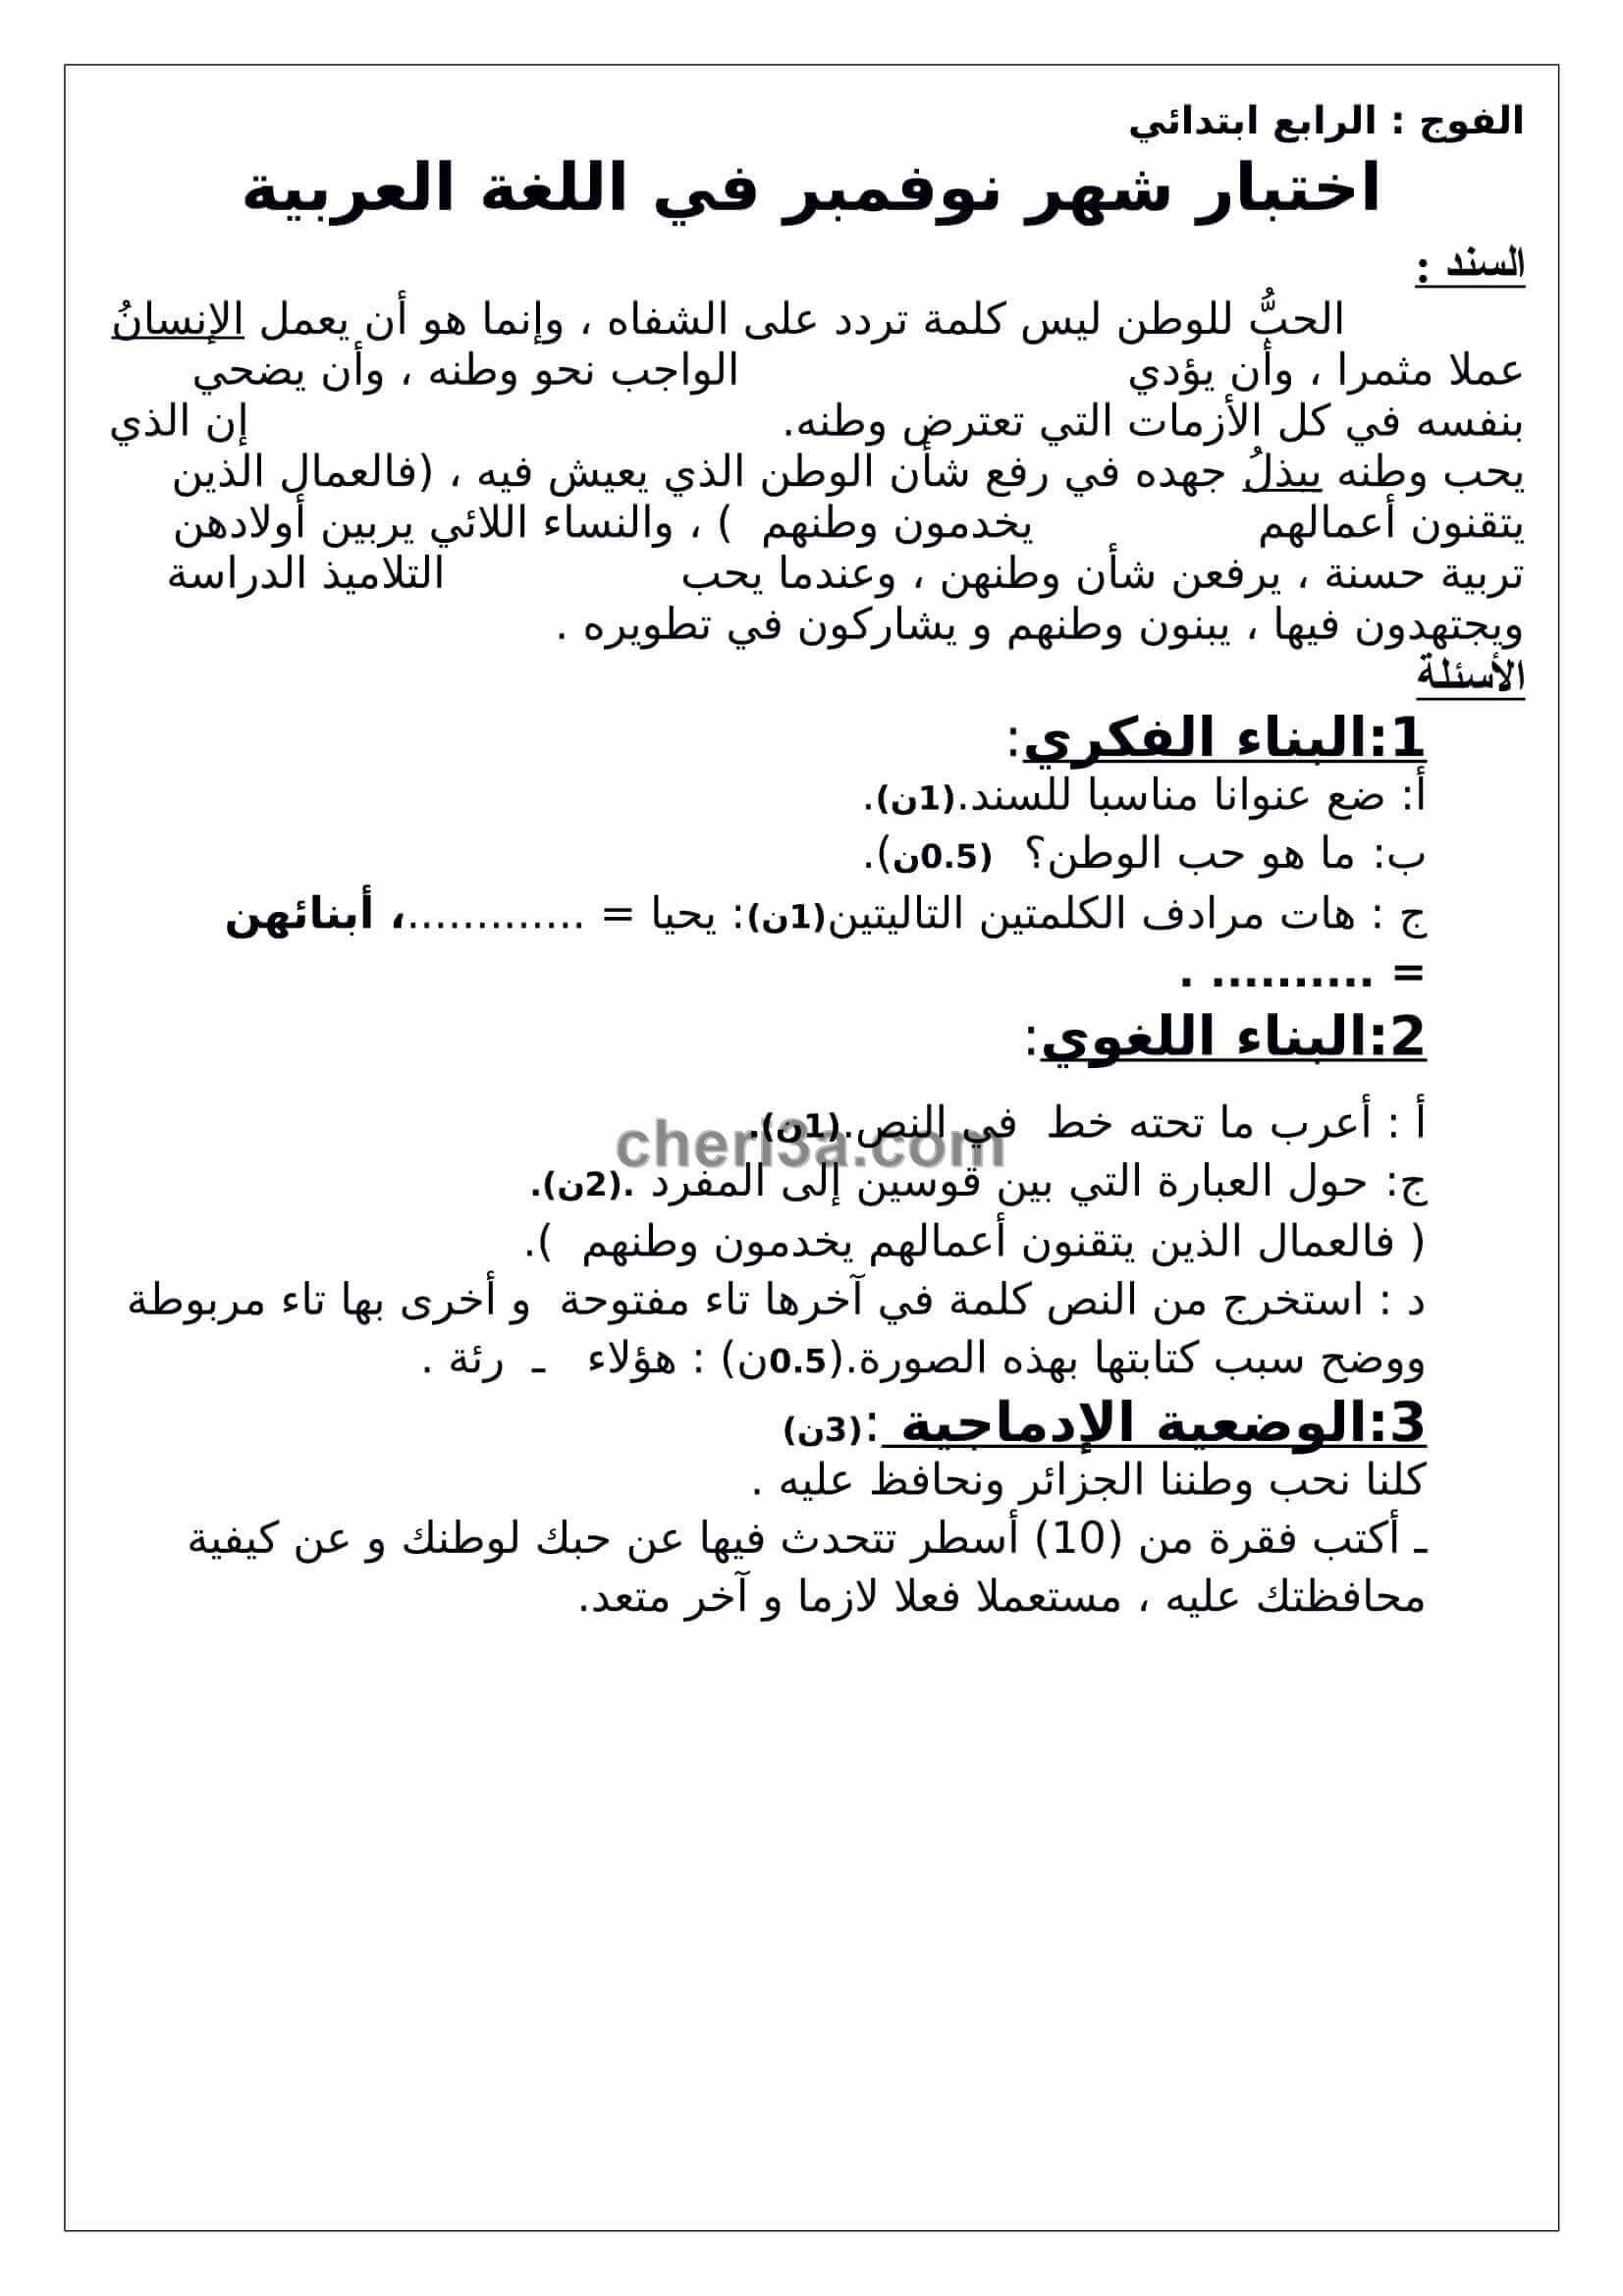 اختبار الفصل الاول للسنة الرابعة ابتدائي في مادة اللغة العربية 4